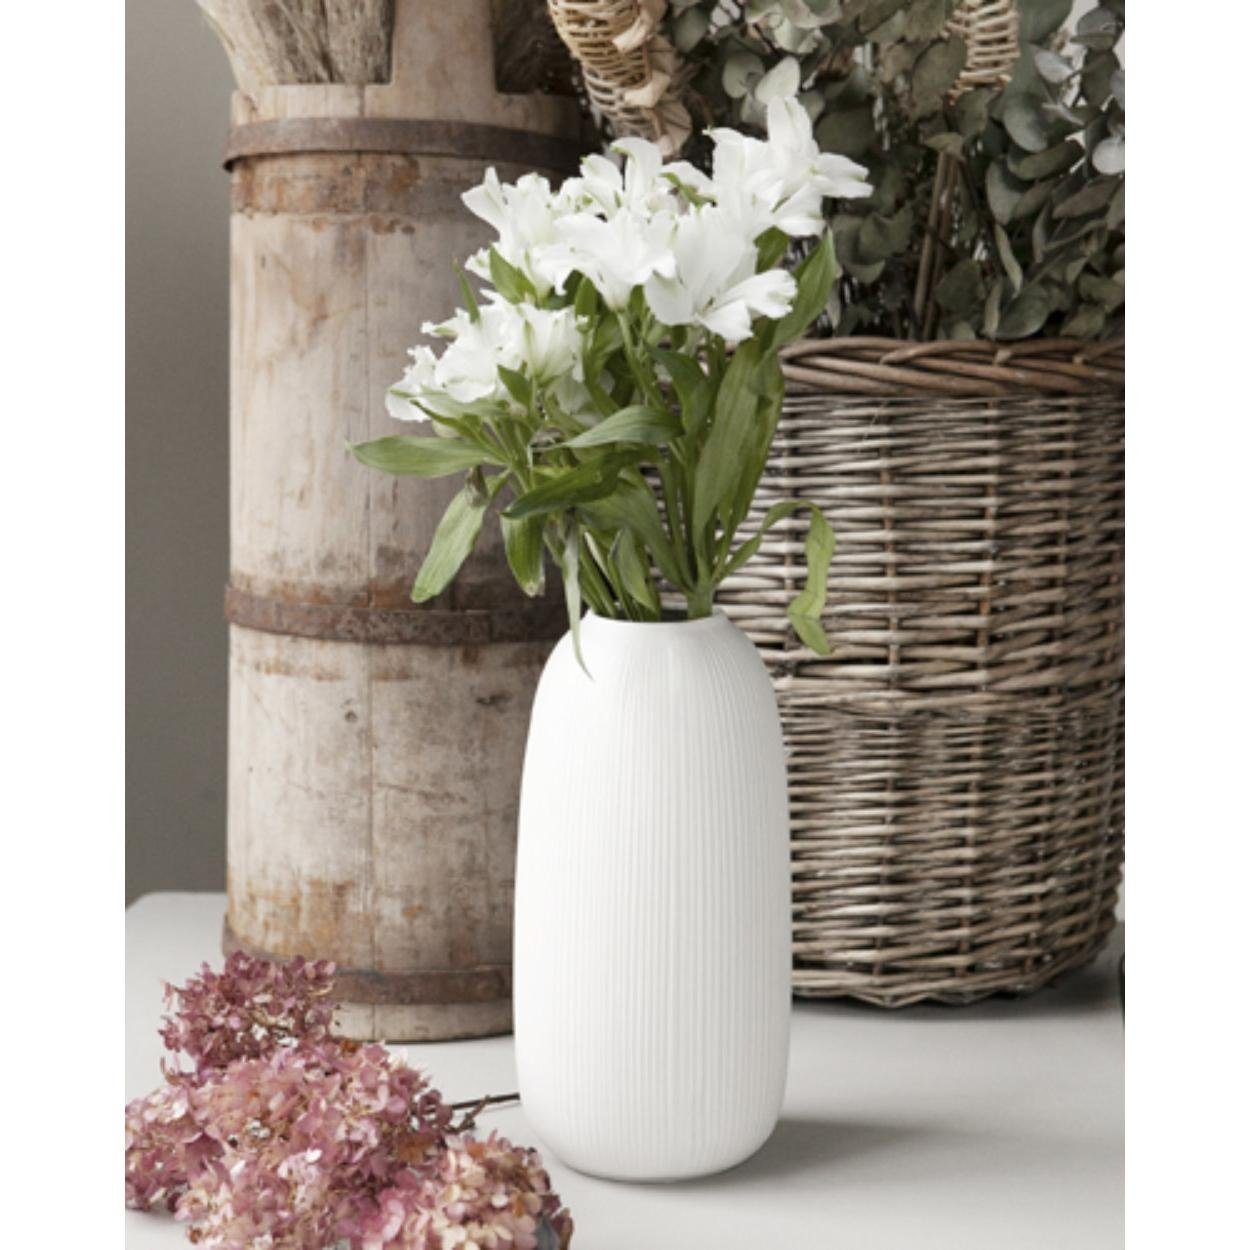 Weiß Åby Storefactory Dekovase (12x26cm) Vase